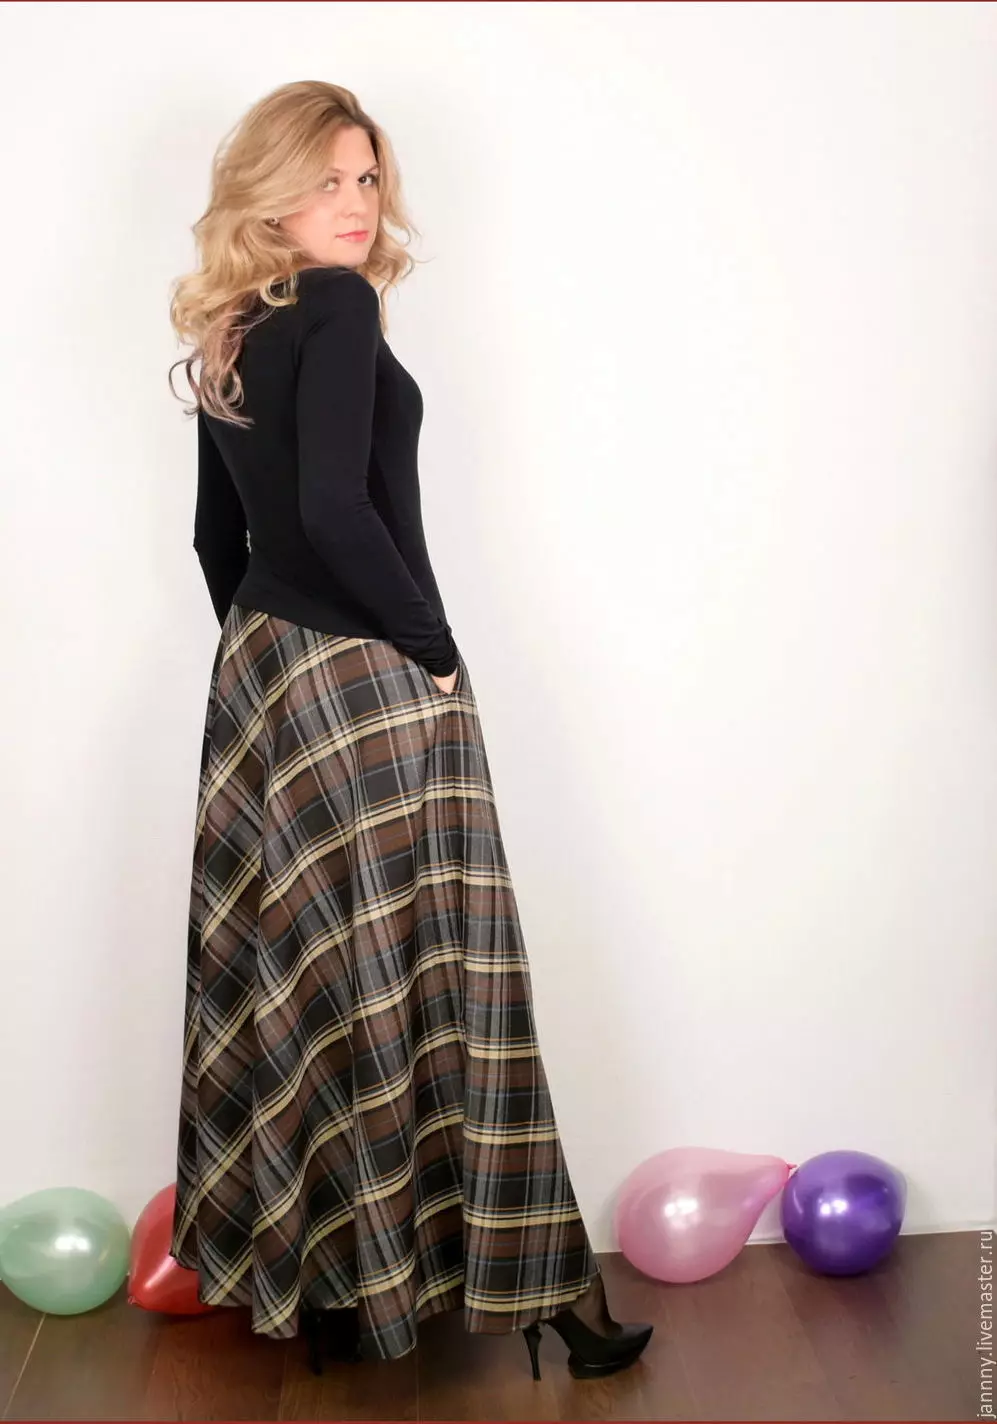 Checkered Long Skirt.